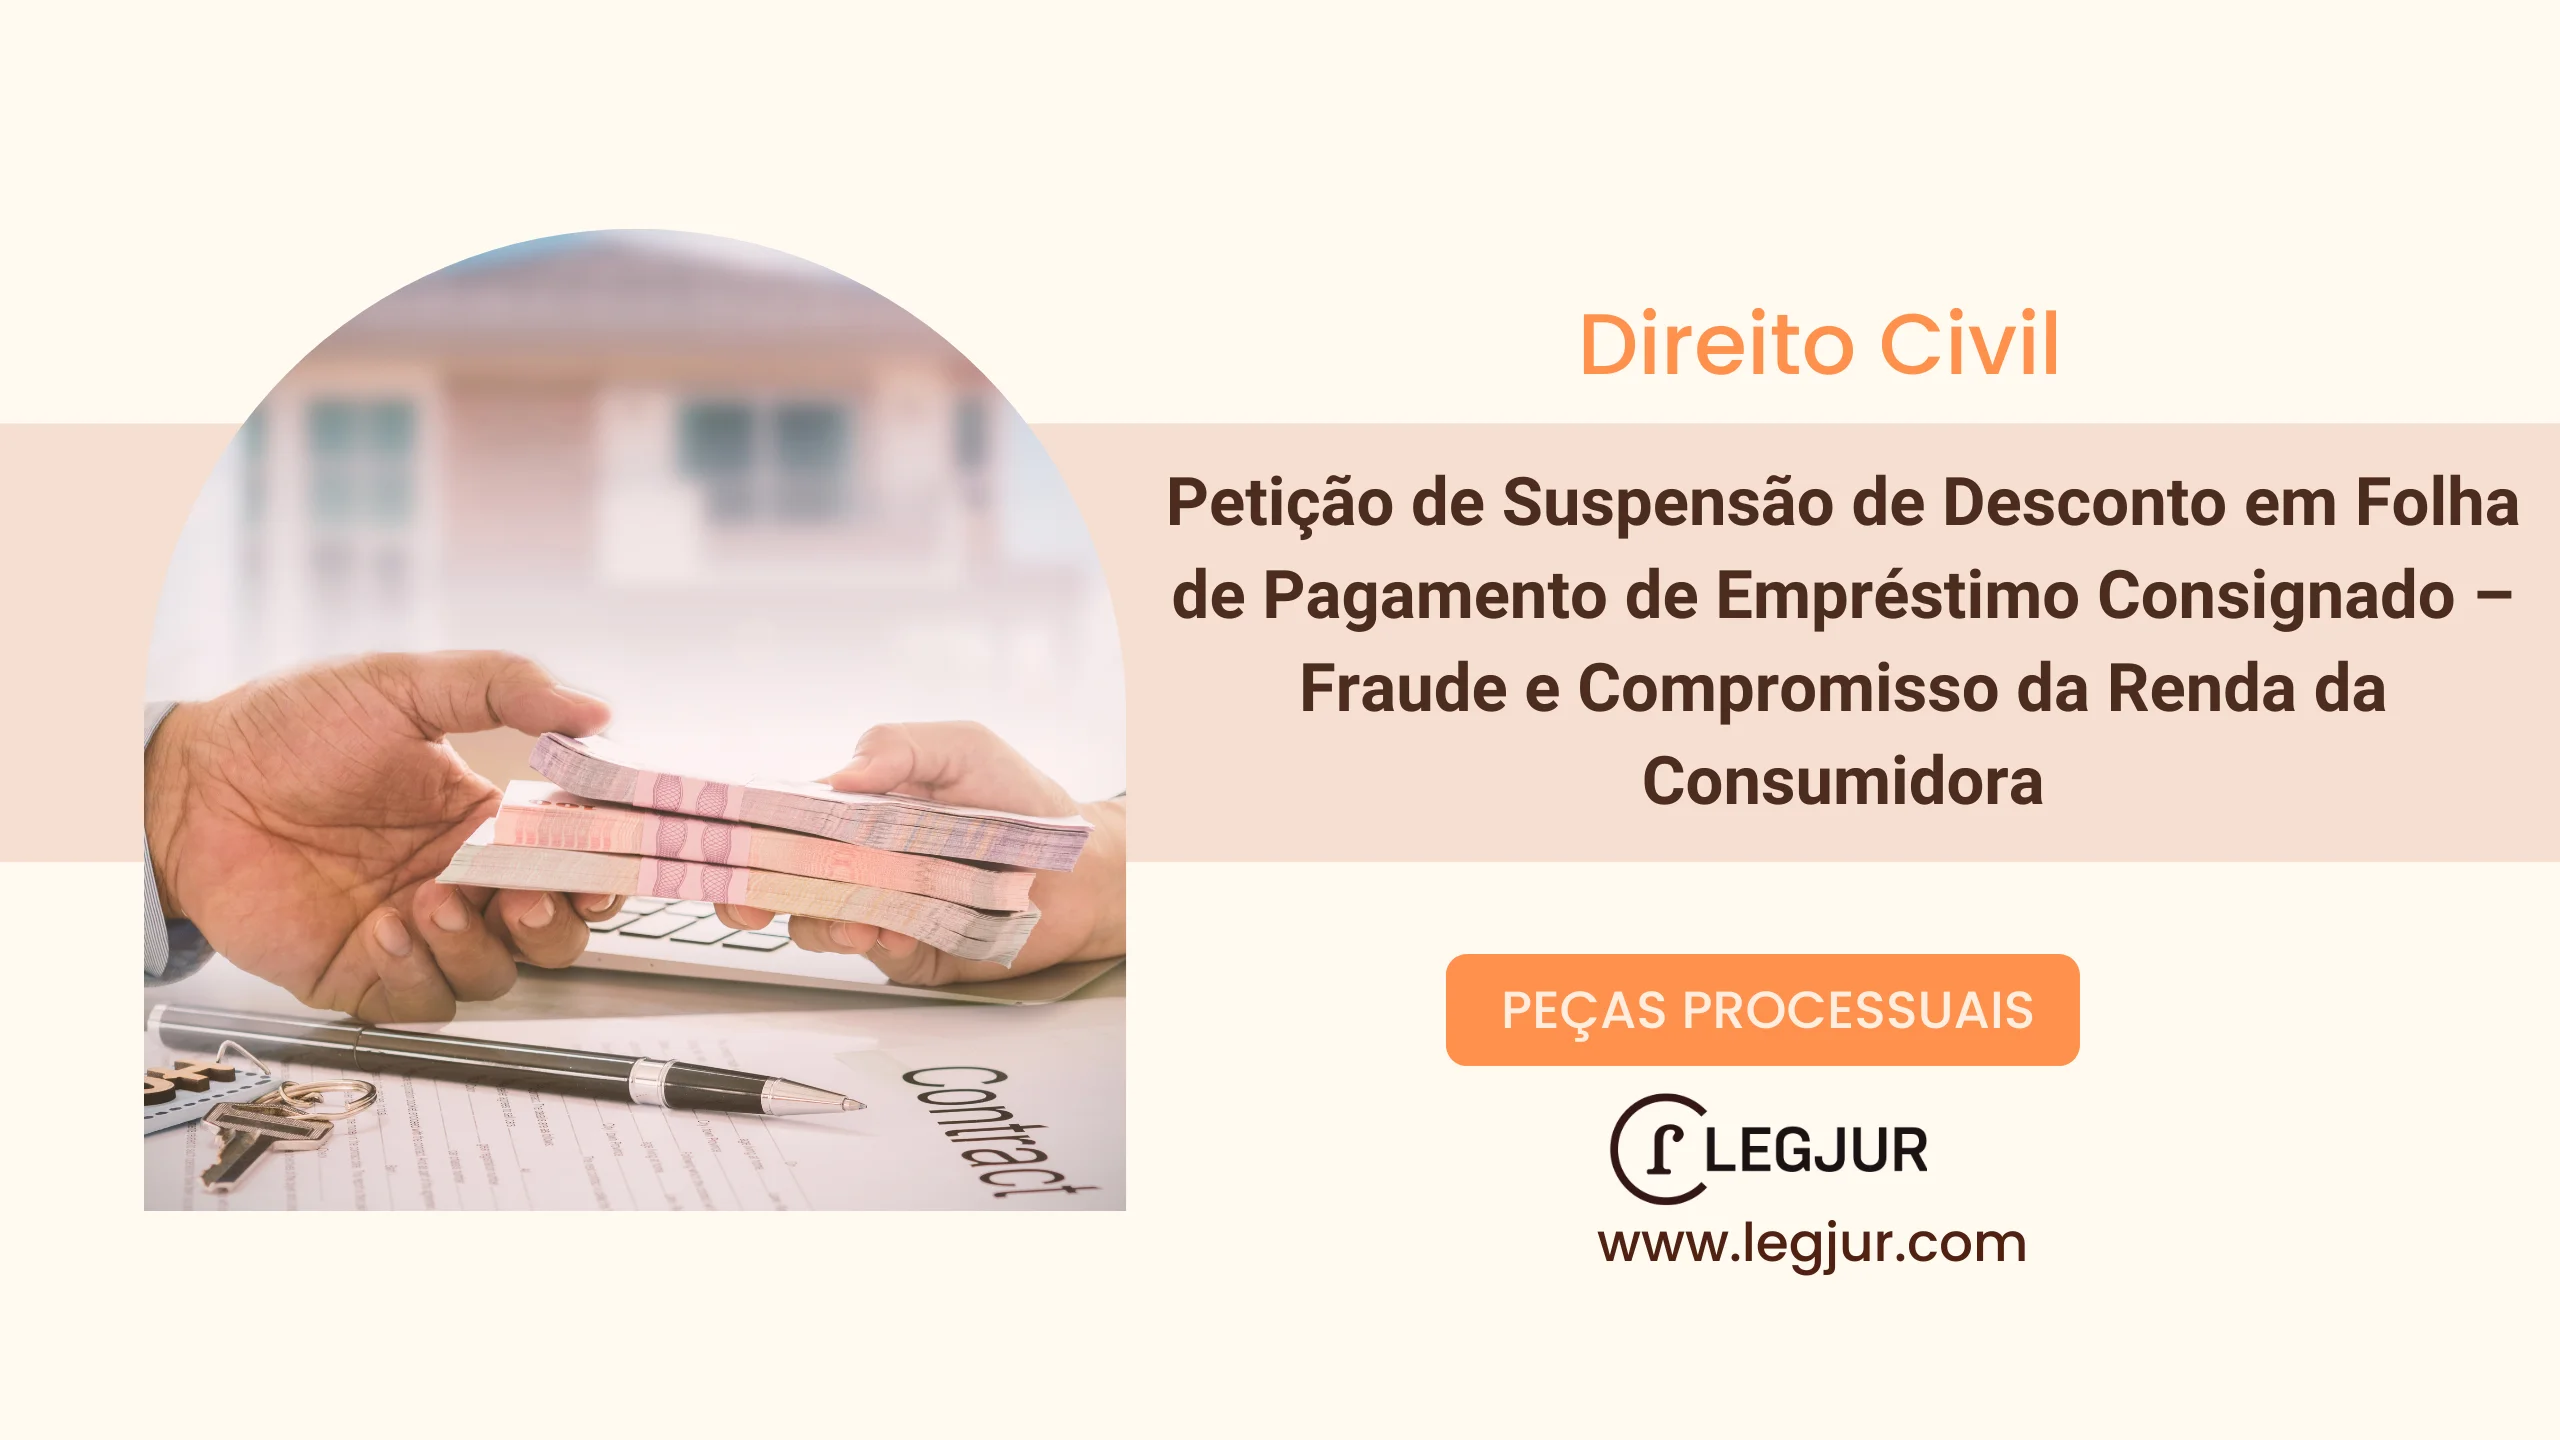 Petição de Suspensão de Desconto em Folha de Pagamento de Empréstimo Consignado – Fraude e Compromisso da Renda da Consumidora